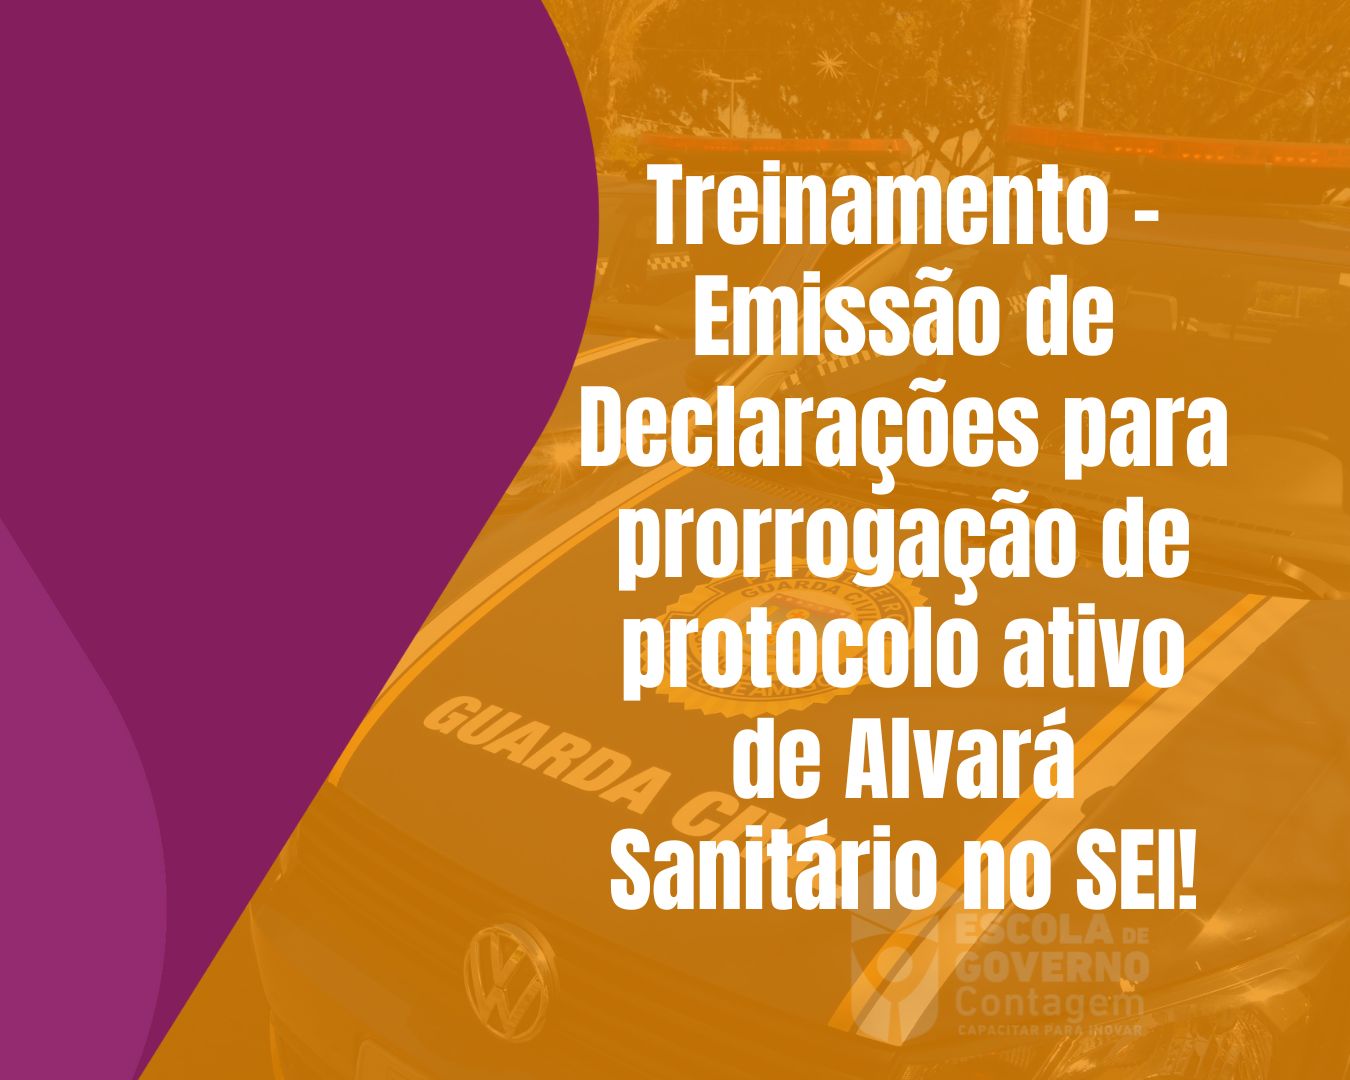 Treinamento - Emissão de Declarações para prorrogação de protocolo ativo de Alvará Sanitário no SEI! - POP-GQ-013 rev. 00